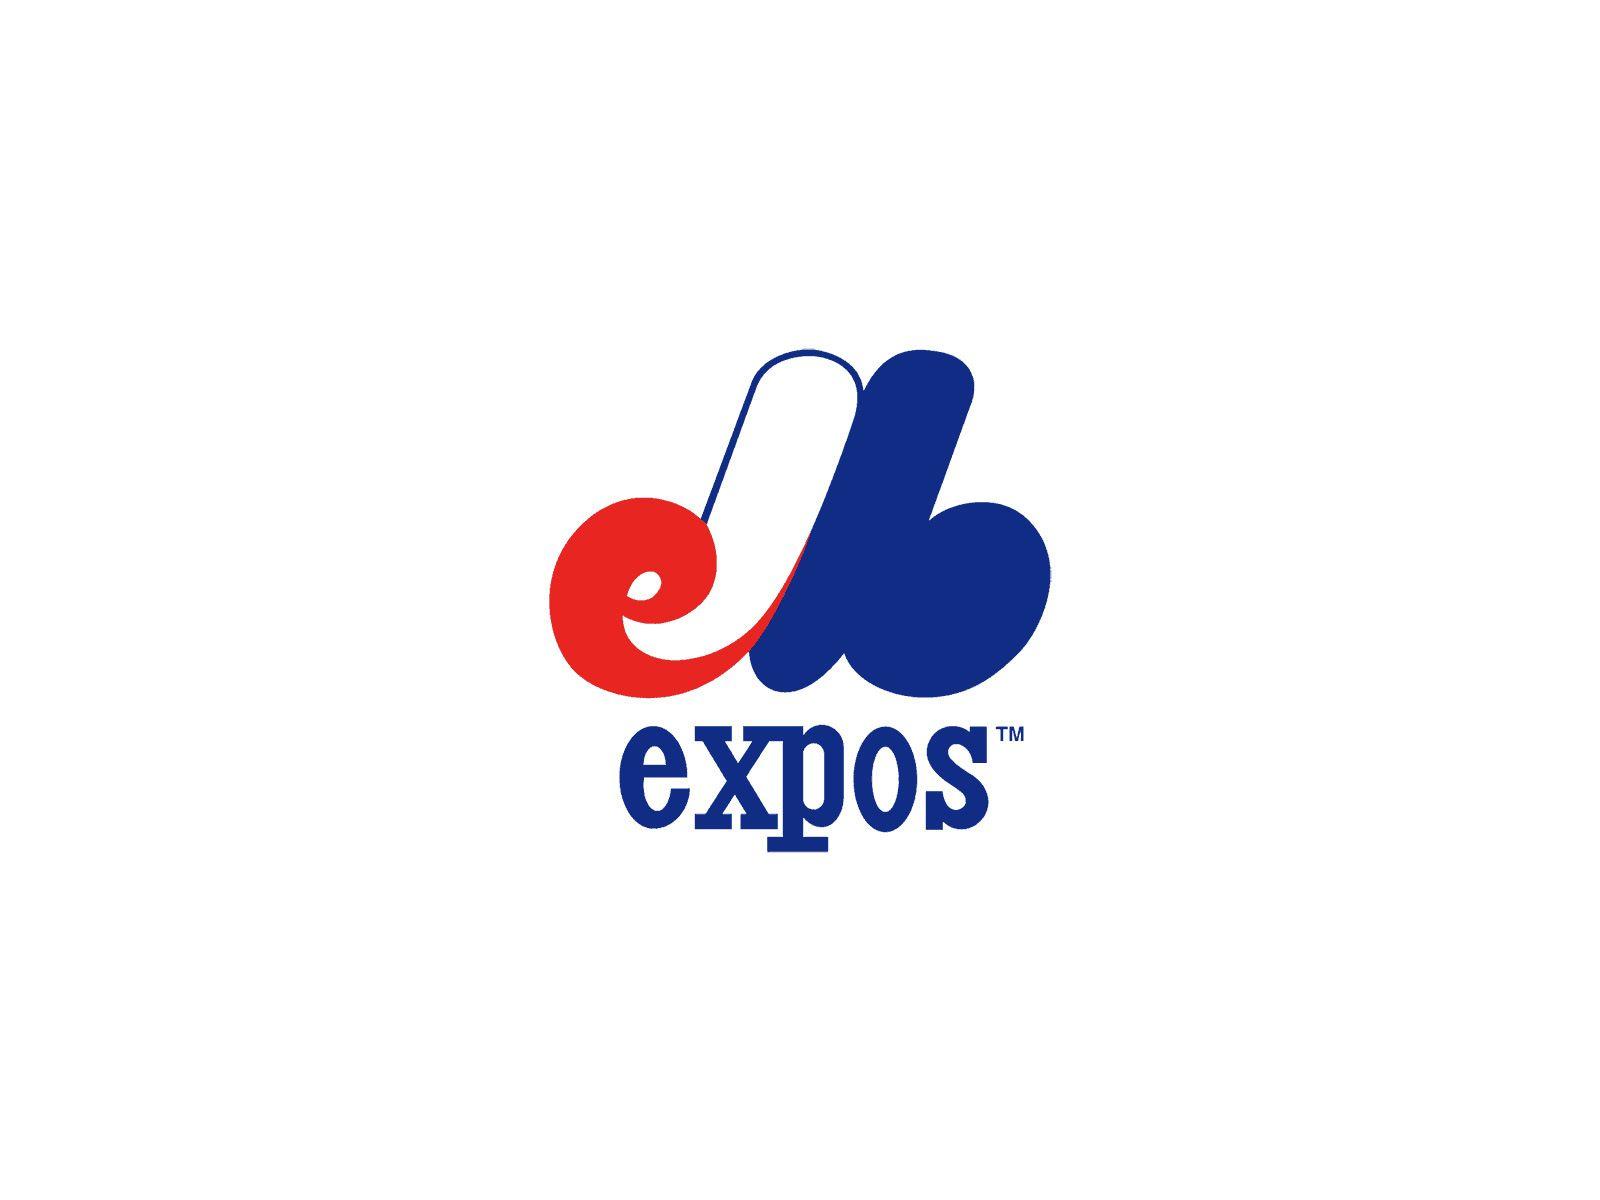 Expos Logo - Montreal Expos Logo